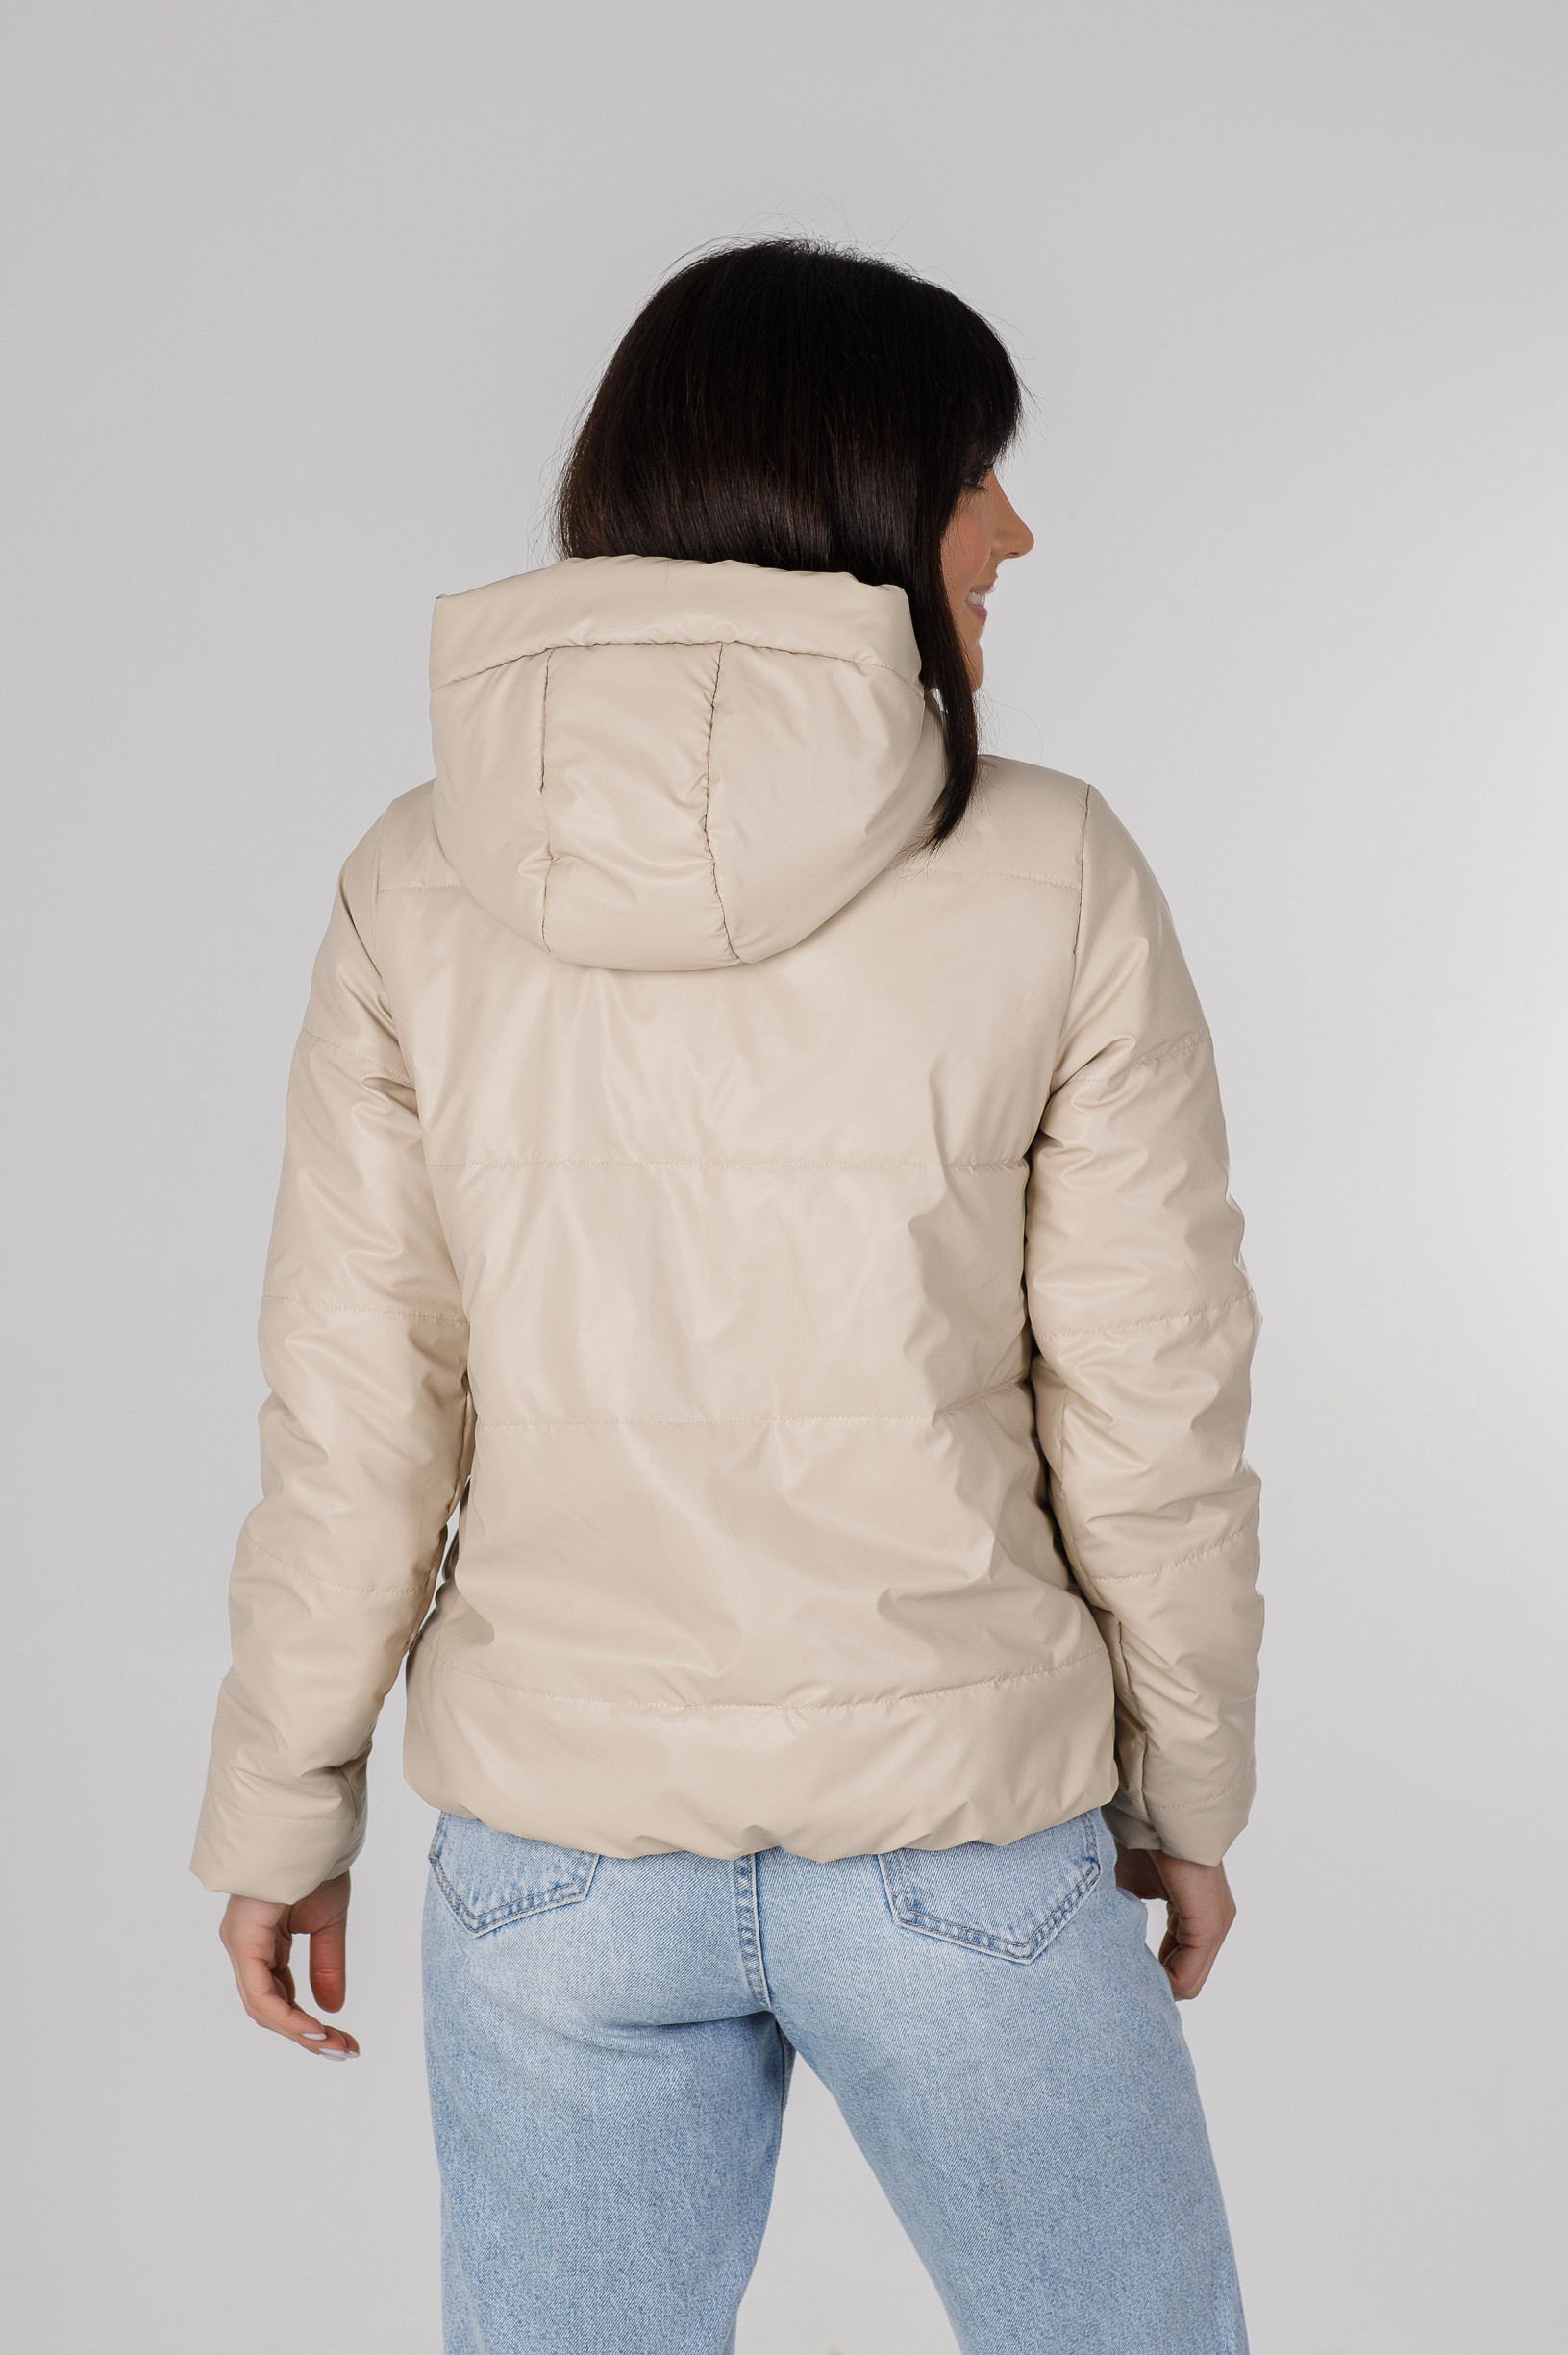 Молочна куртка для дівчини з еко-шкіри Франкі